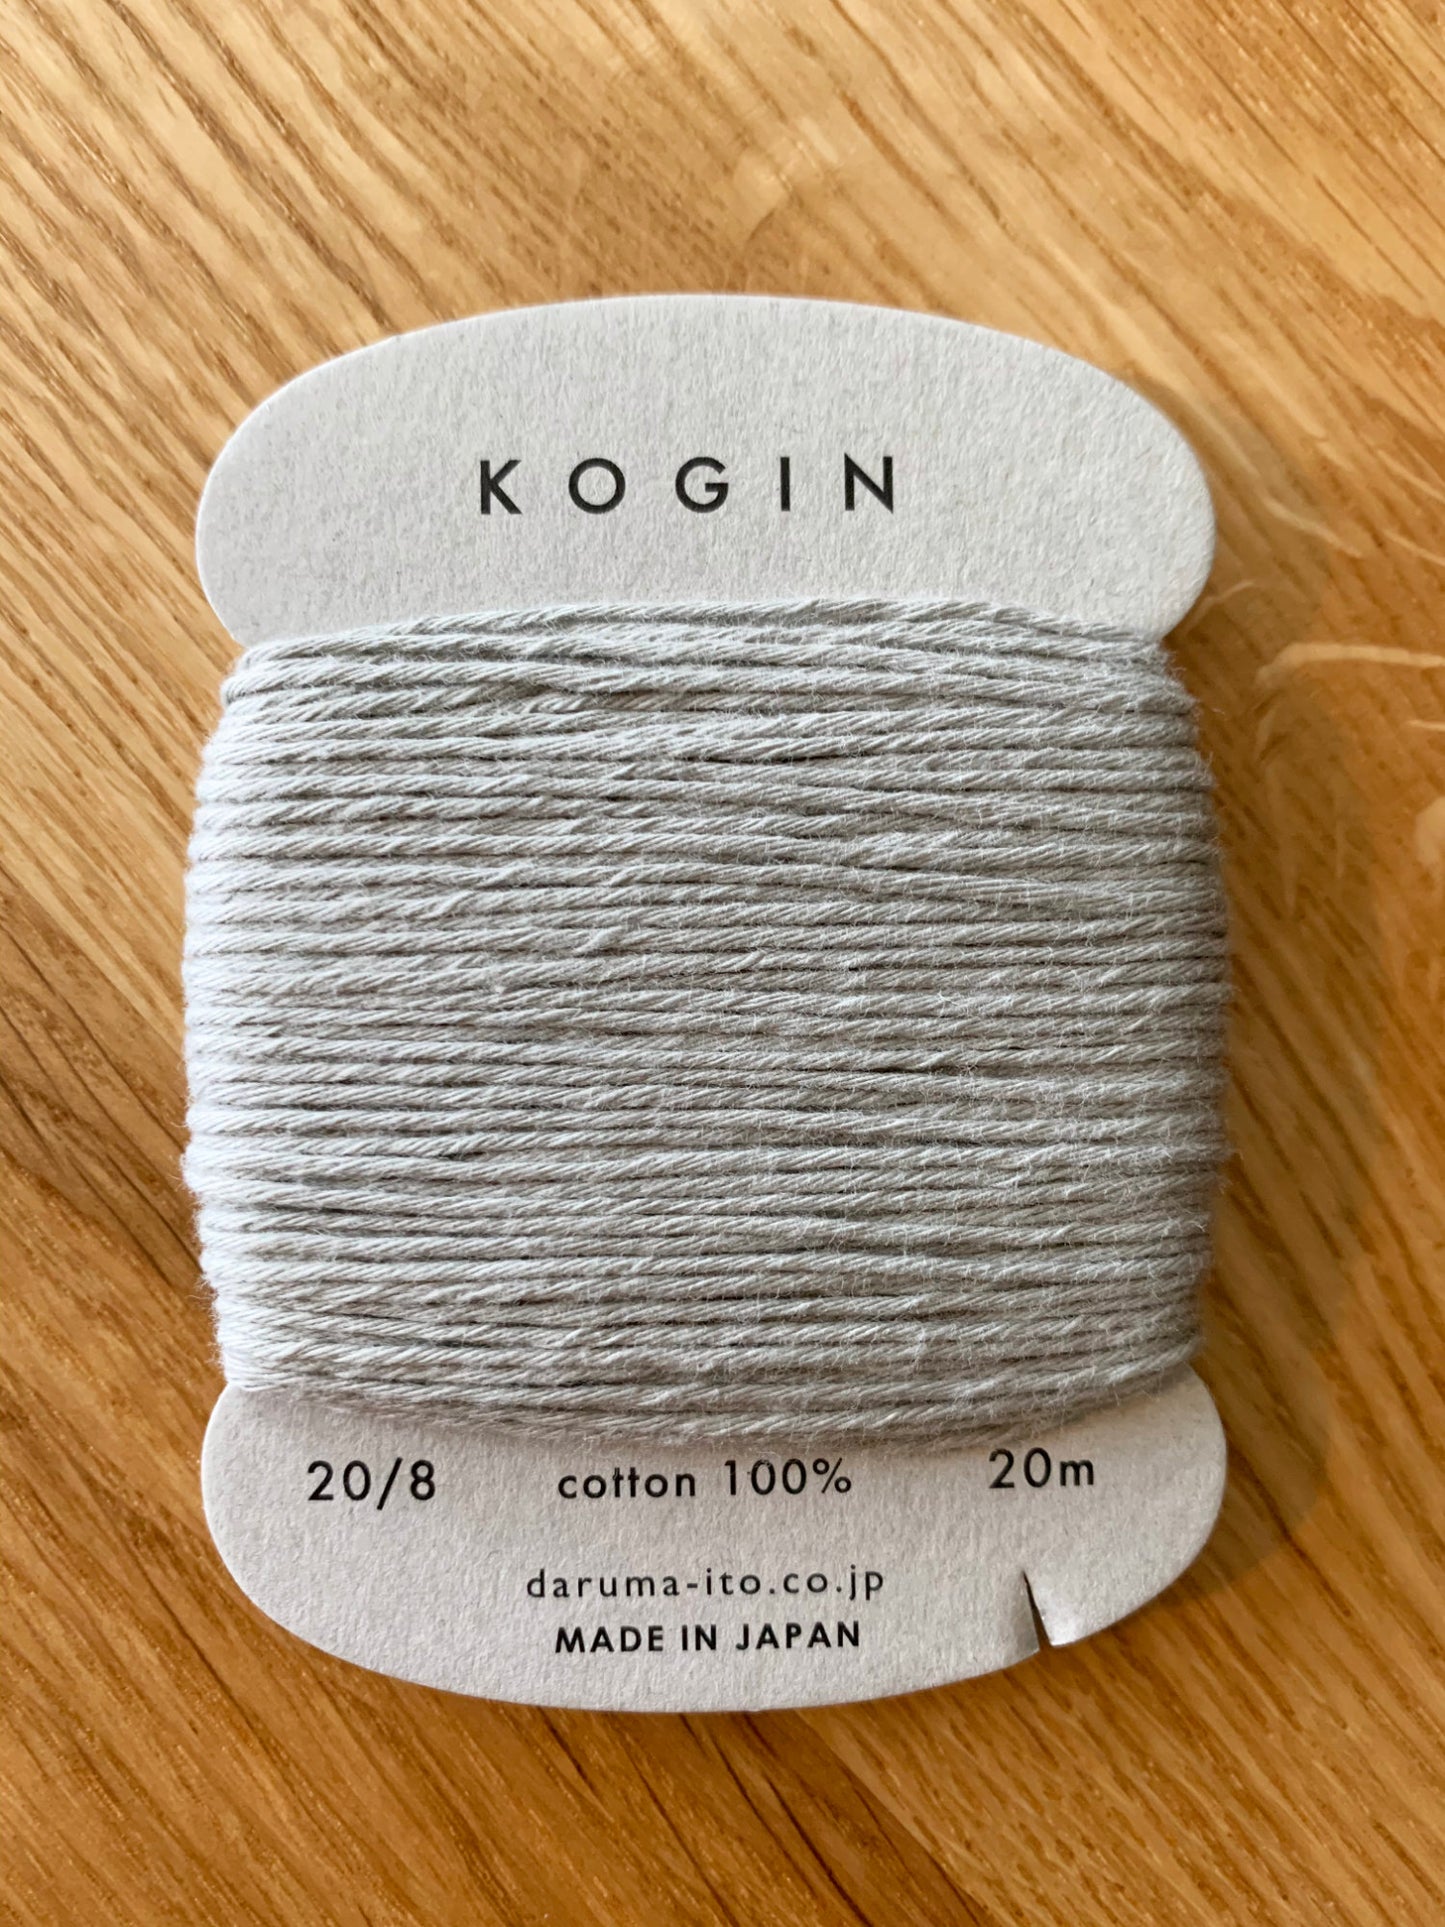 Daruma #10 GRAY Japanese Cotton KOGIN thread 20 meter skein 20/8